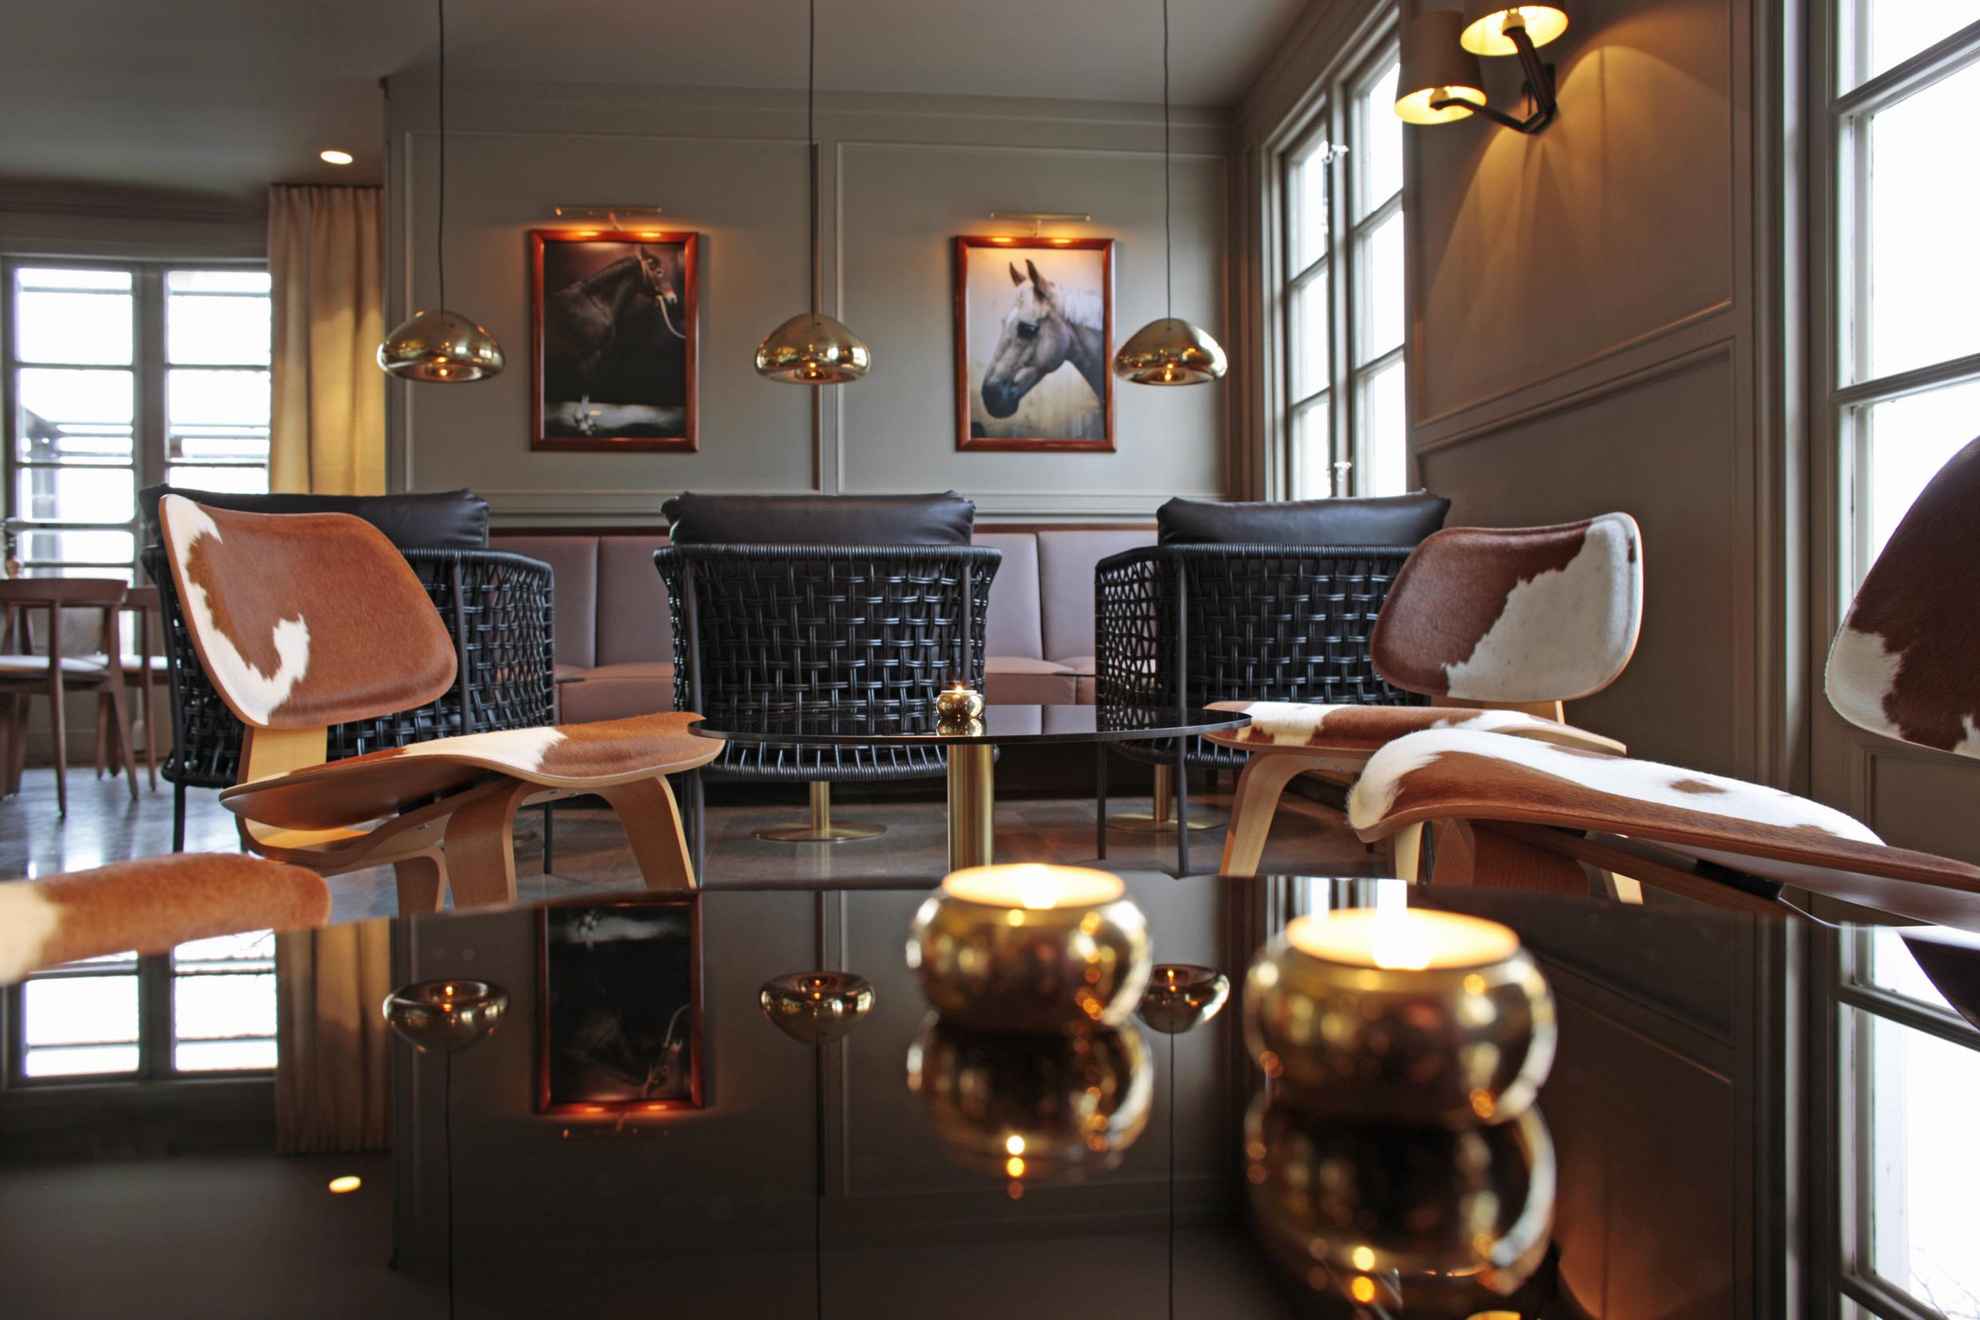 Ein Lounge-Bereich in einem Hotel ist mit Möbeln in warmen Kupfertönen eingerichtet.